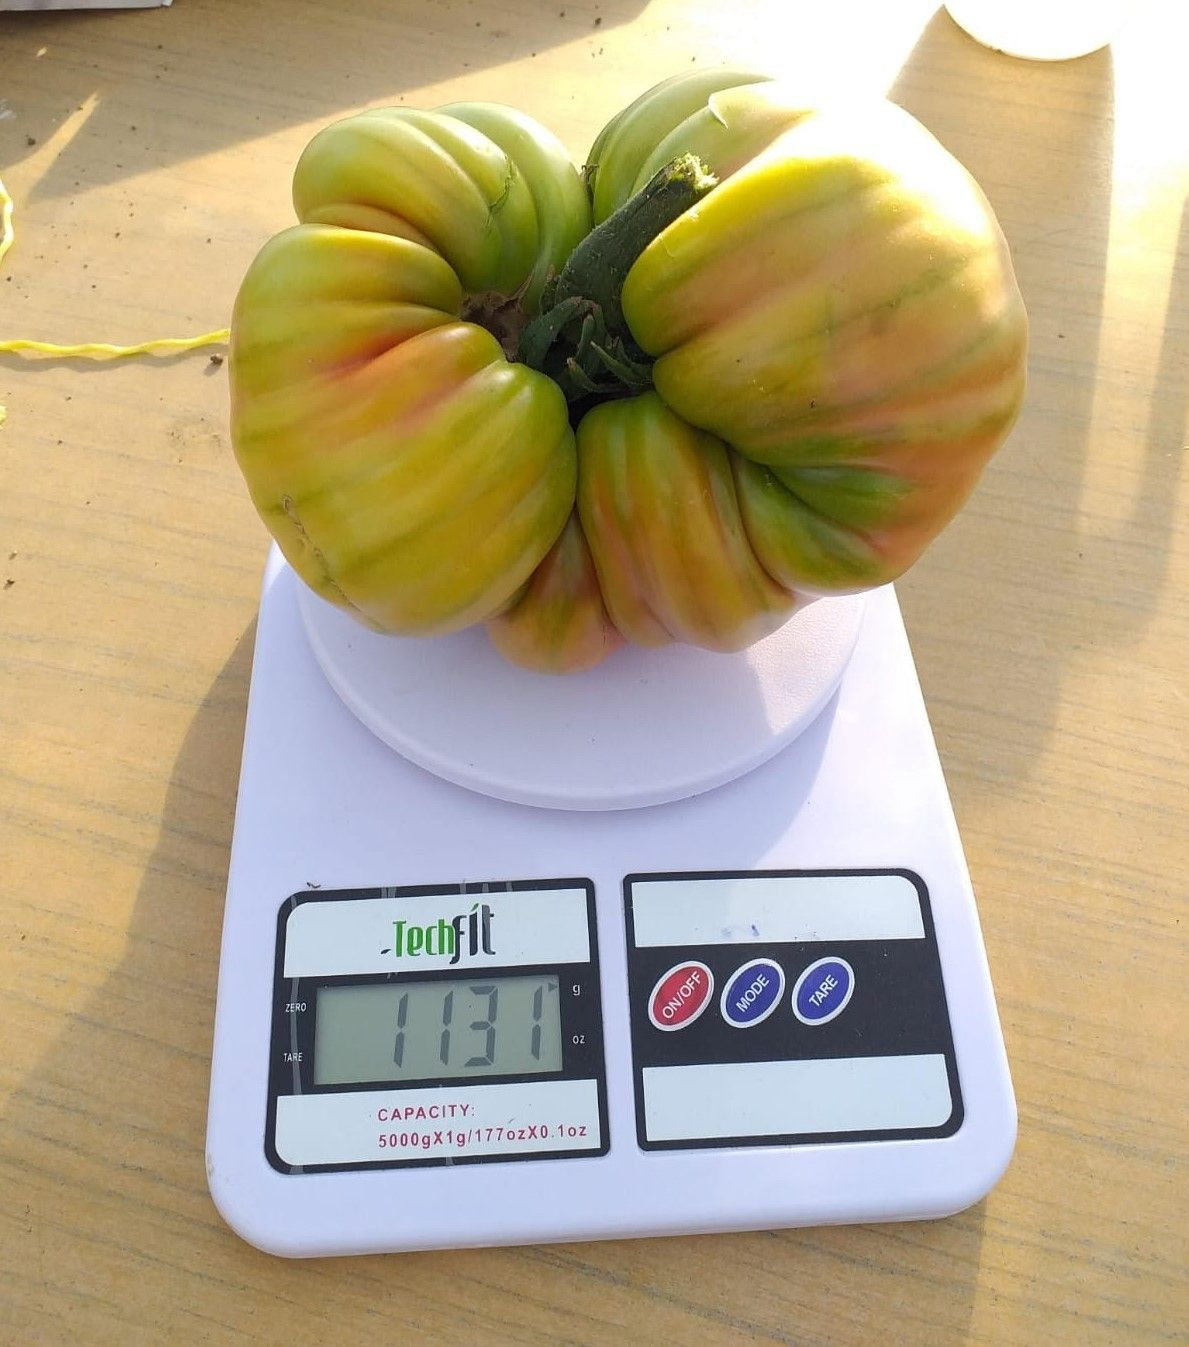 Somalili öğrencilerden Türkiye rekoru Tekirdağ'da domatesin ağırlığı şaşırttı